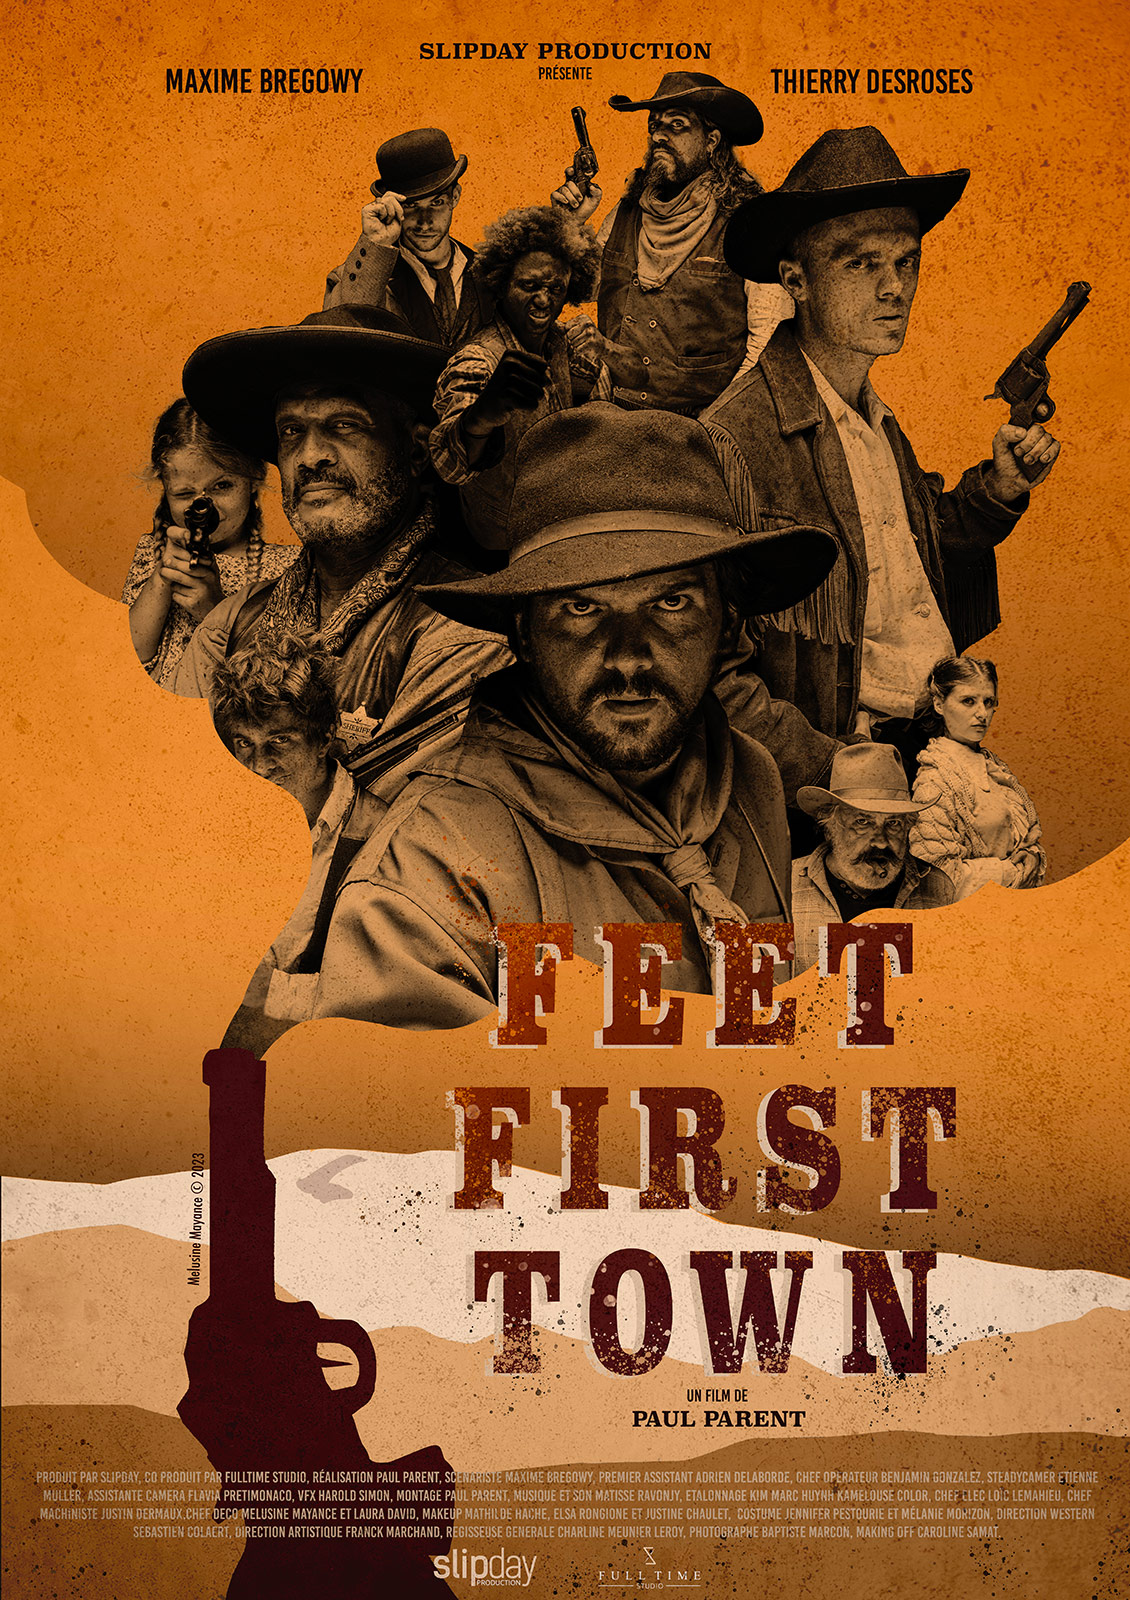 Feet First Town